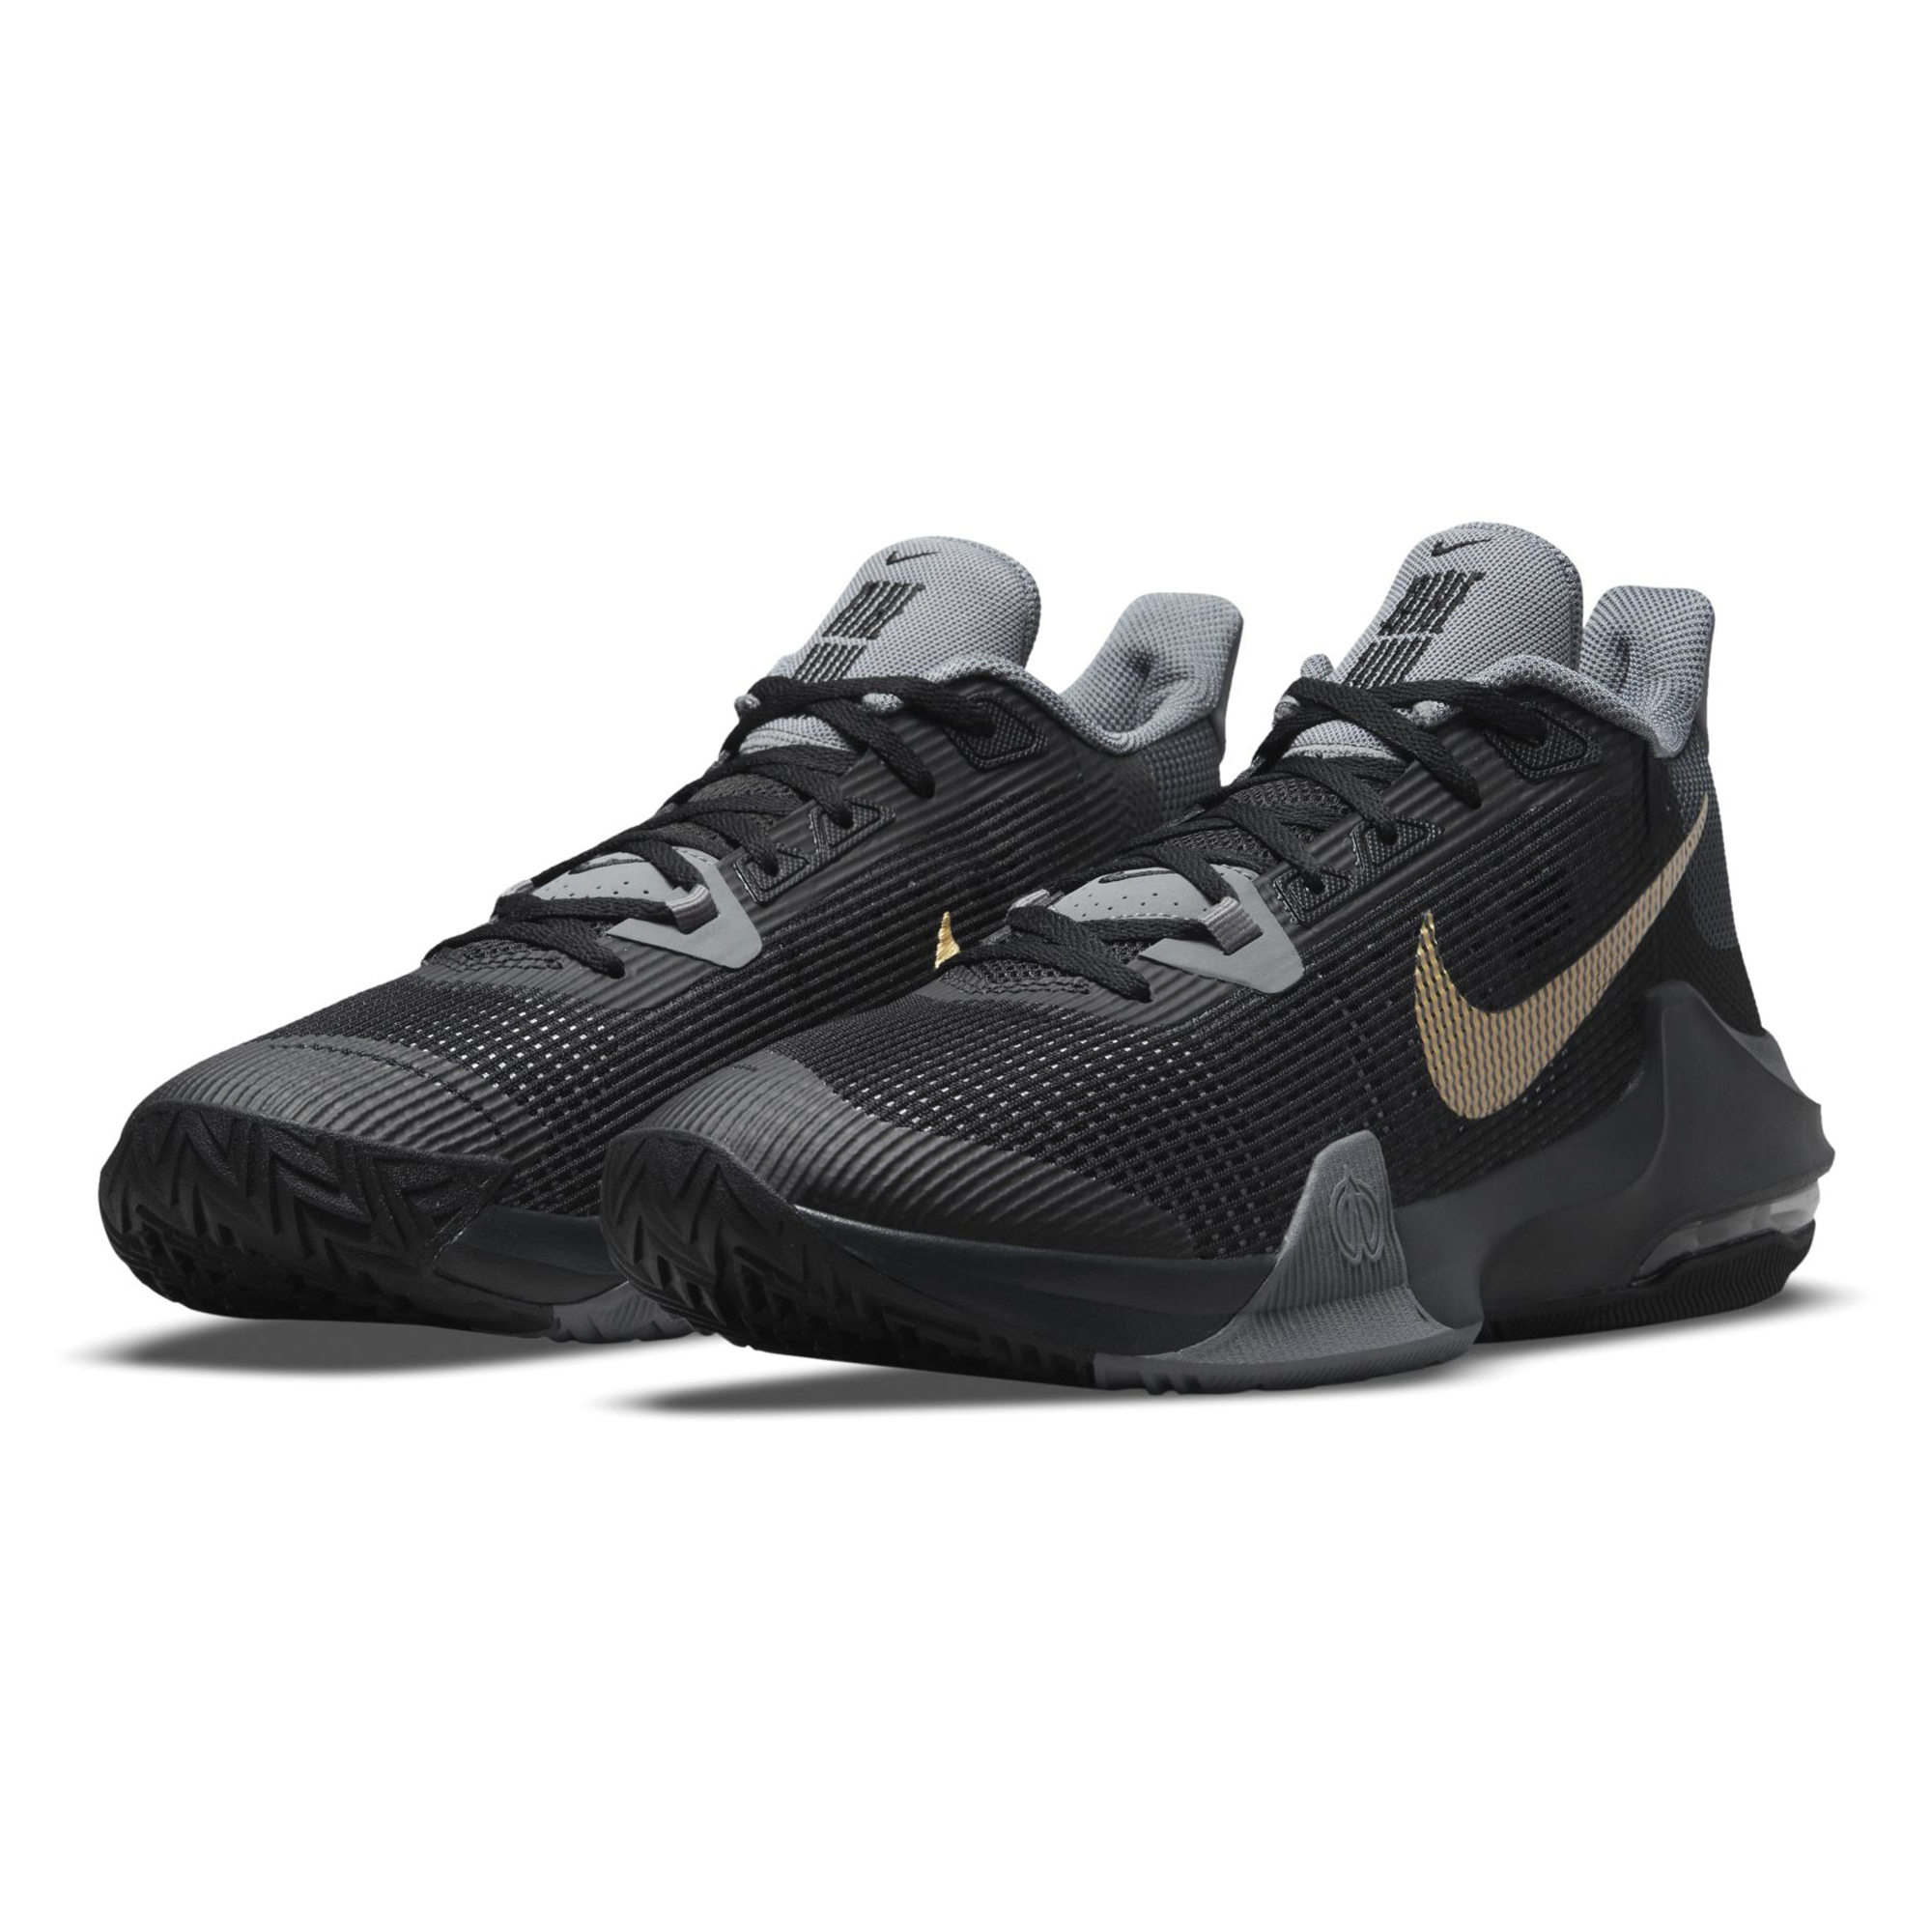 Nike Air Max Impact 3 Basketbalschoen Heren online kopen